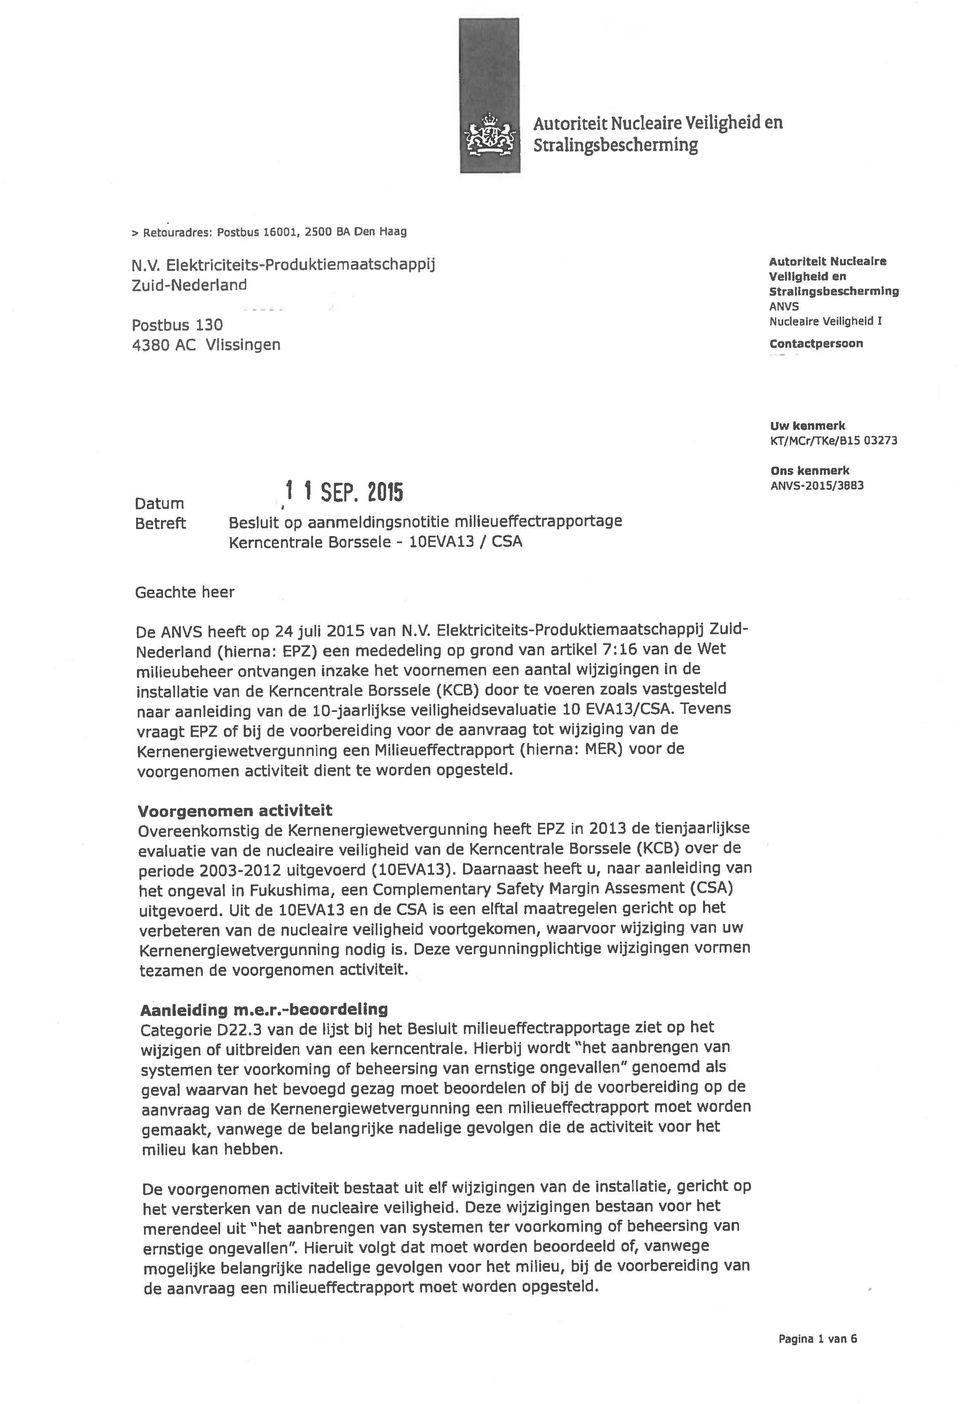 Autoriteit Nucleaire Veiligheid en Zuid-Nederland Straiinsbeschermng - Postbus 130 Nucleaire Veiligheid 1 aanvraag van de Kernenergiewetvergunning een milieueffectrapport moet worden systemen ter